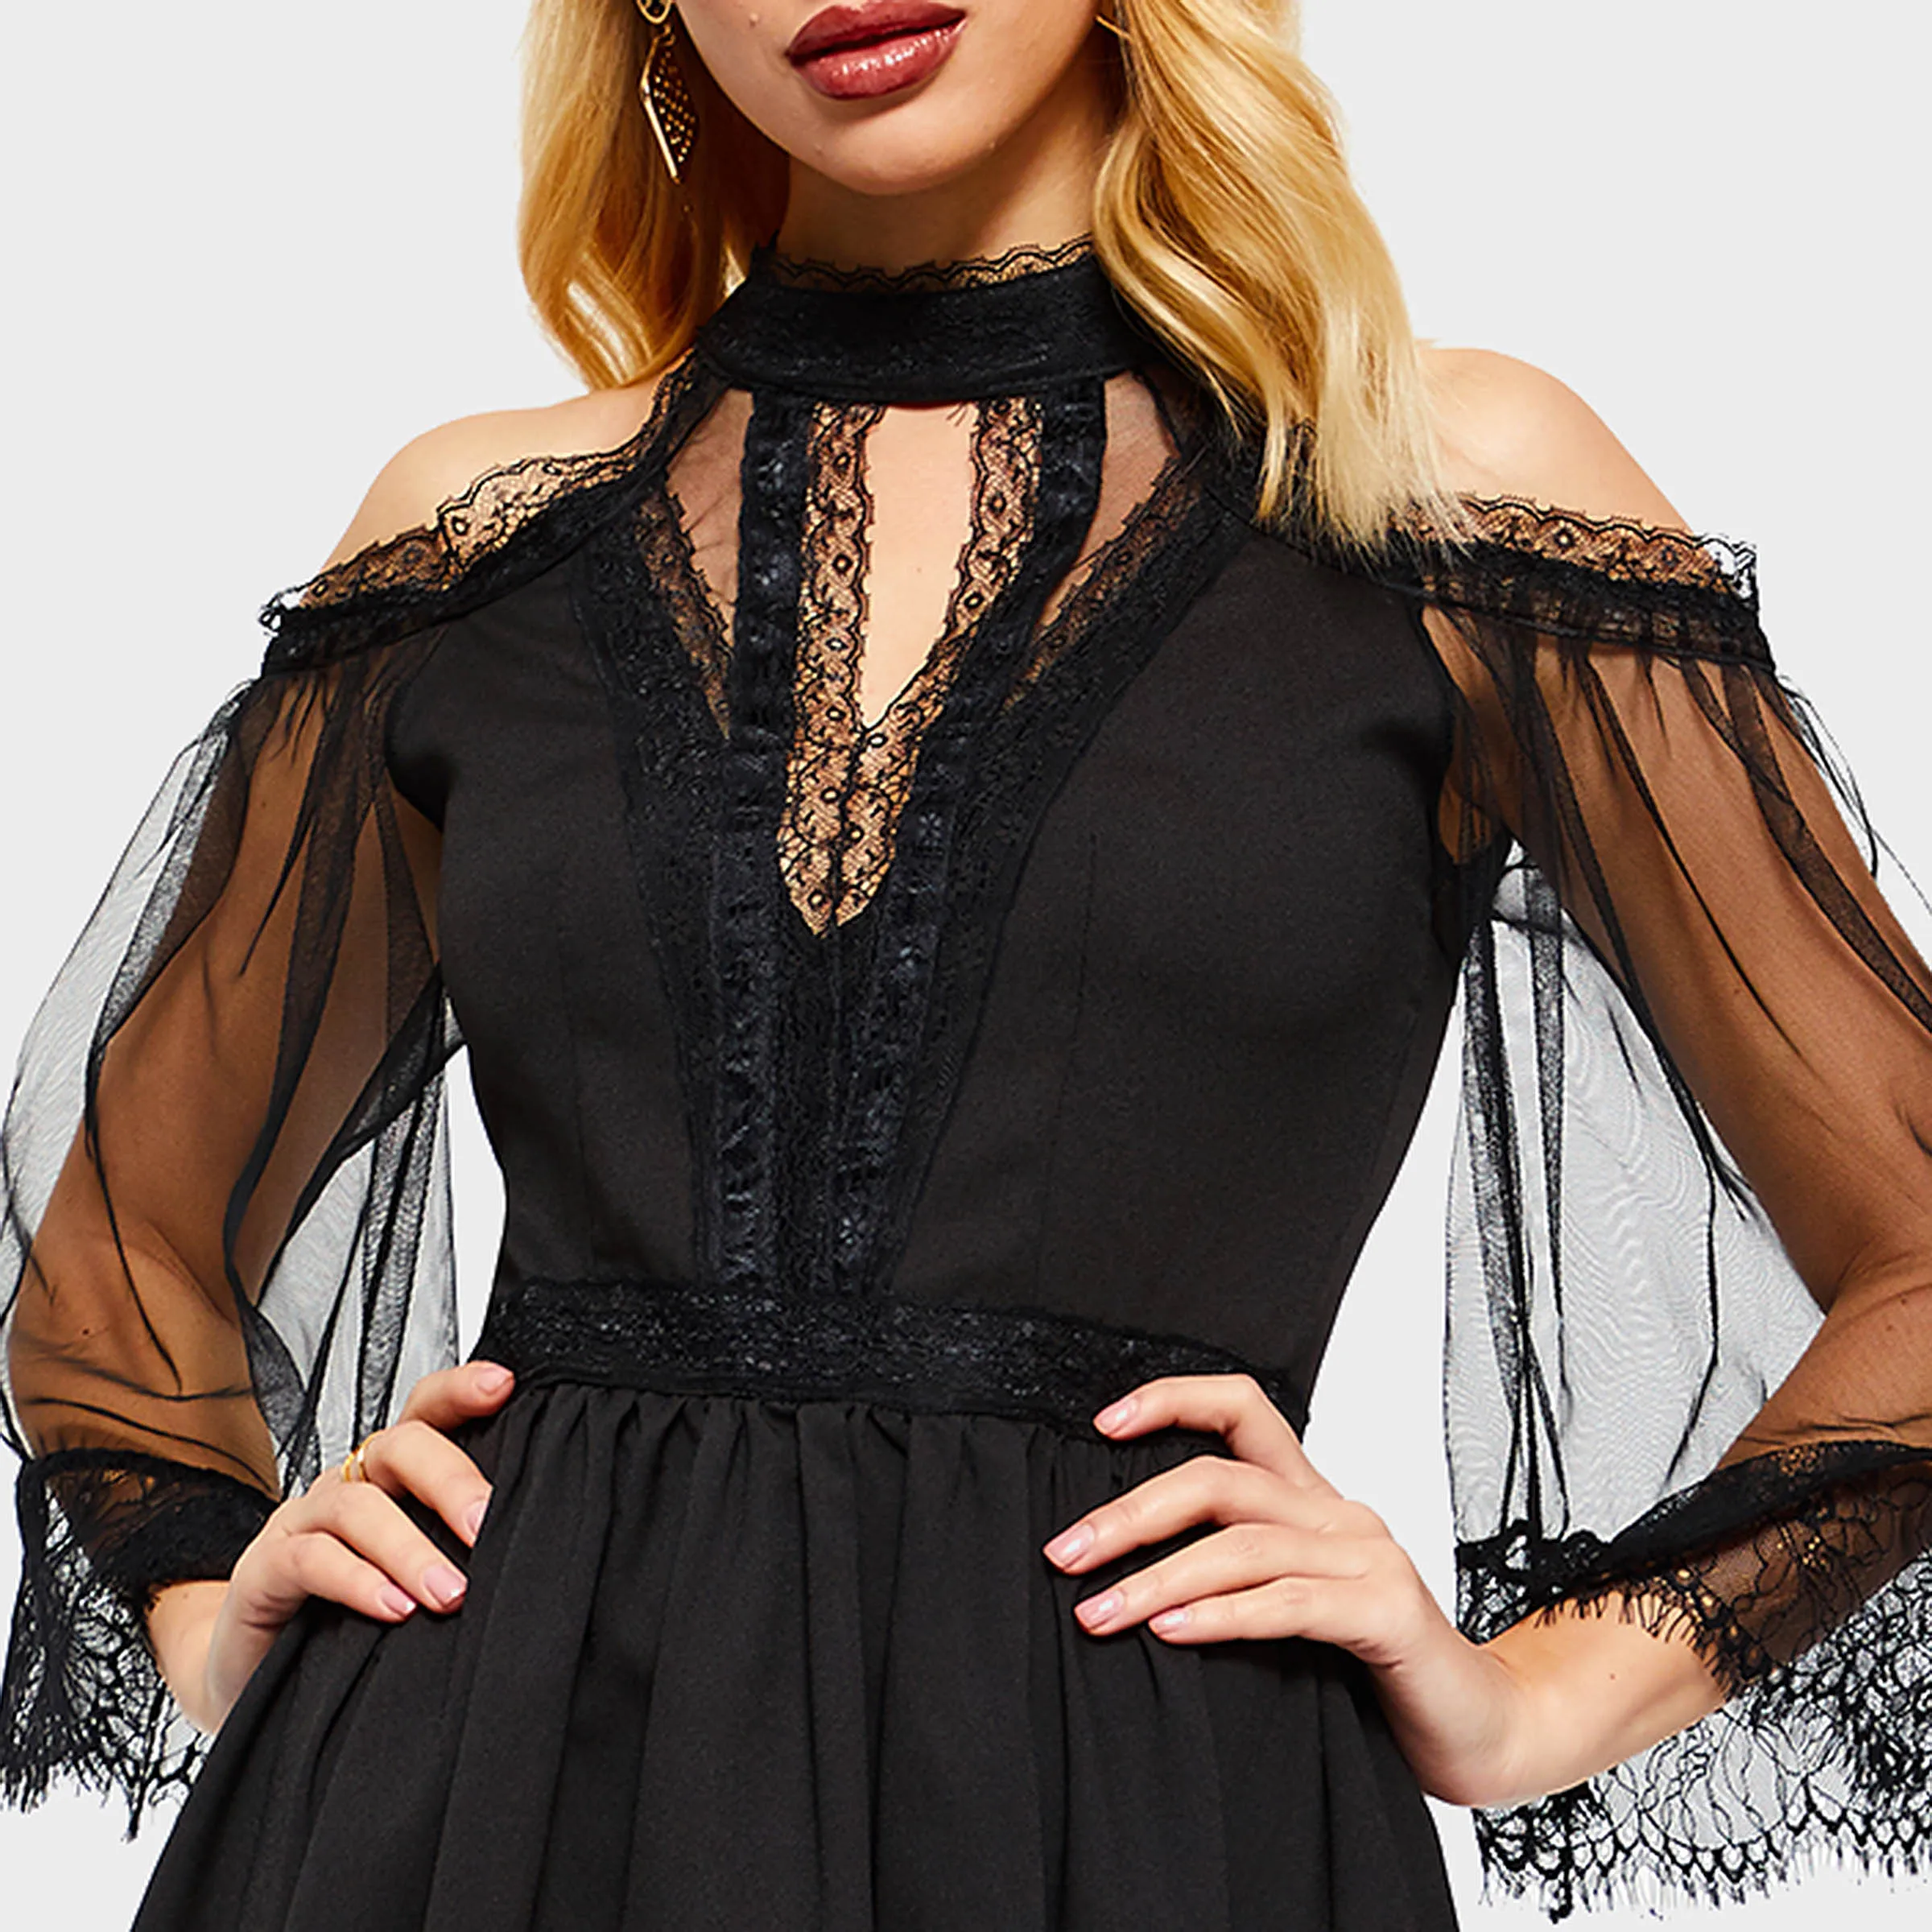 Rosetic готическое элегантное винтажное черное Сетчатое кружевное платье модные тонкие вечерние сексуальные платья Bella Morte Maiden Wicked шкатулка Cutie платья в готическом стиле